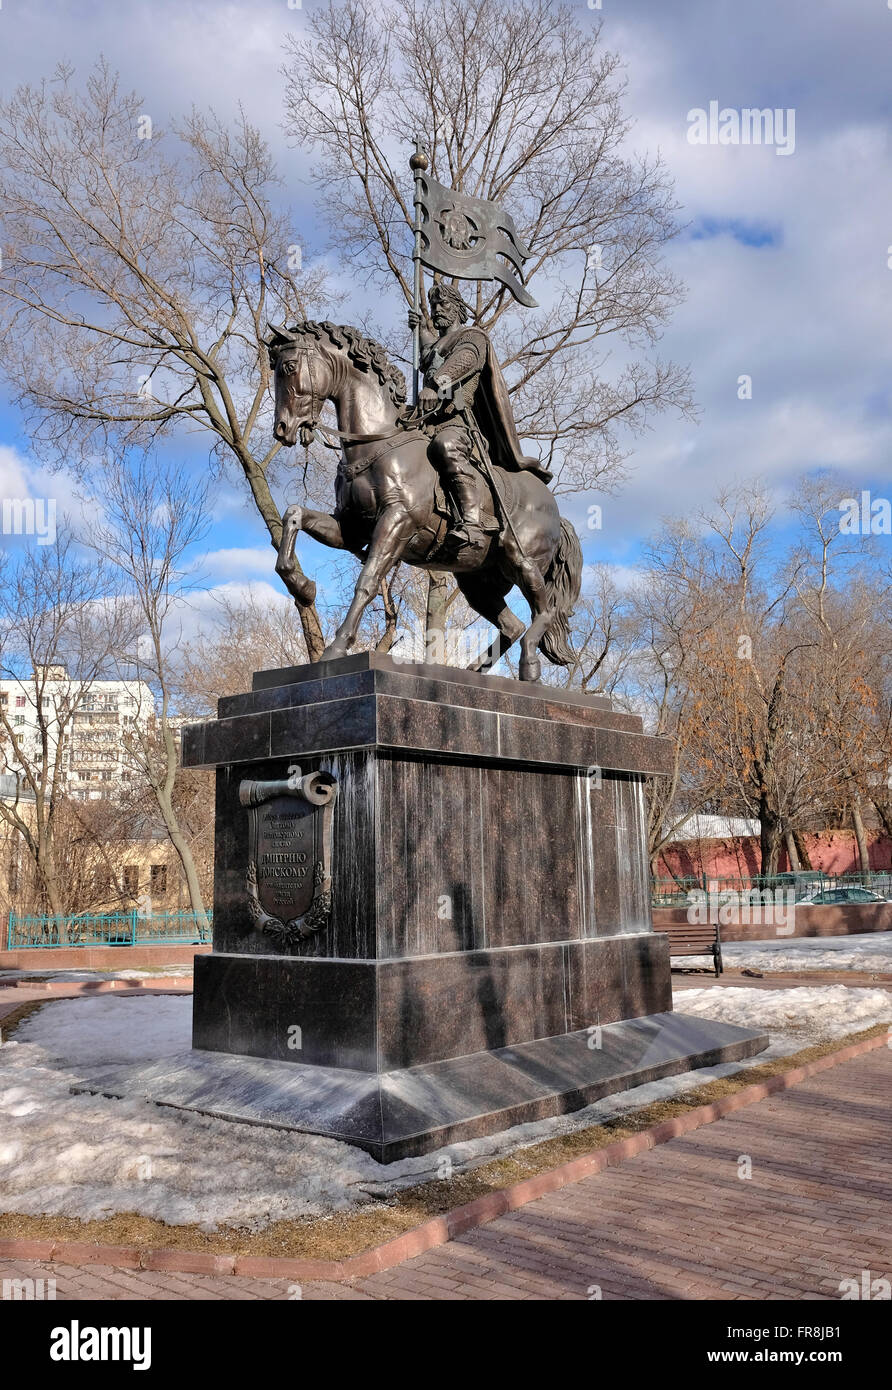 Mosca, Monumento al Santo Principe Dimitry Donskoy liberatore della terra russa, punto di riferimento Foto Stock